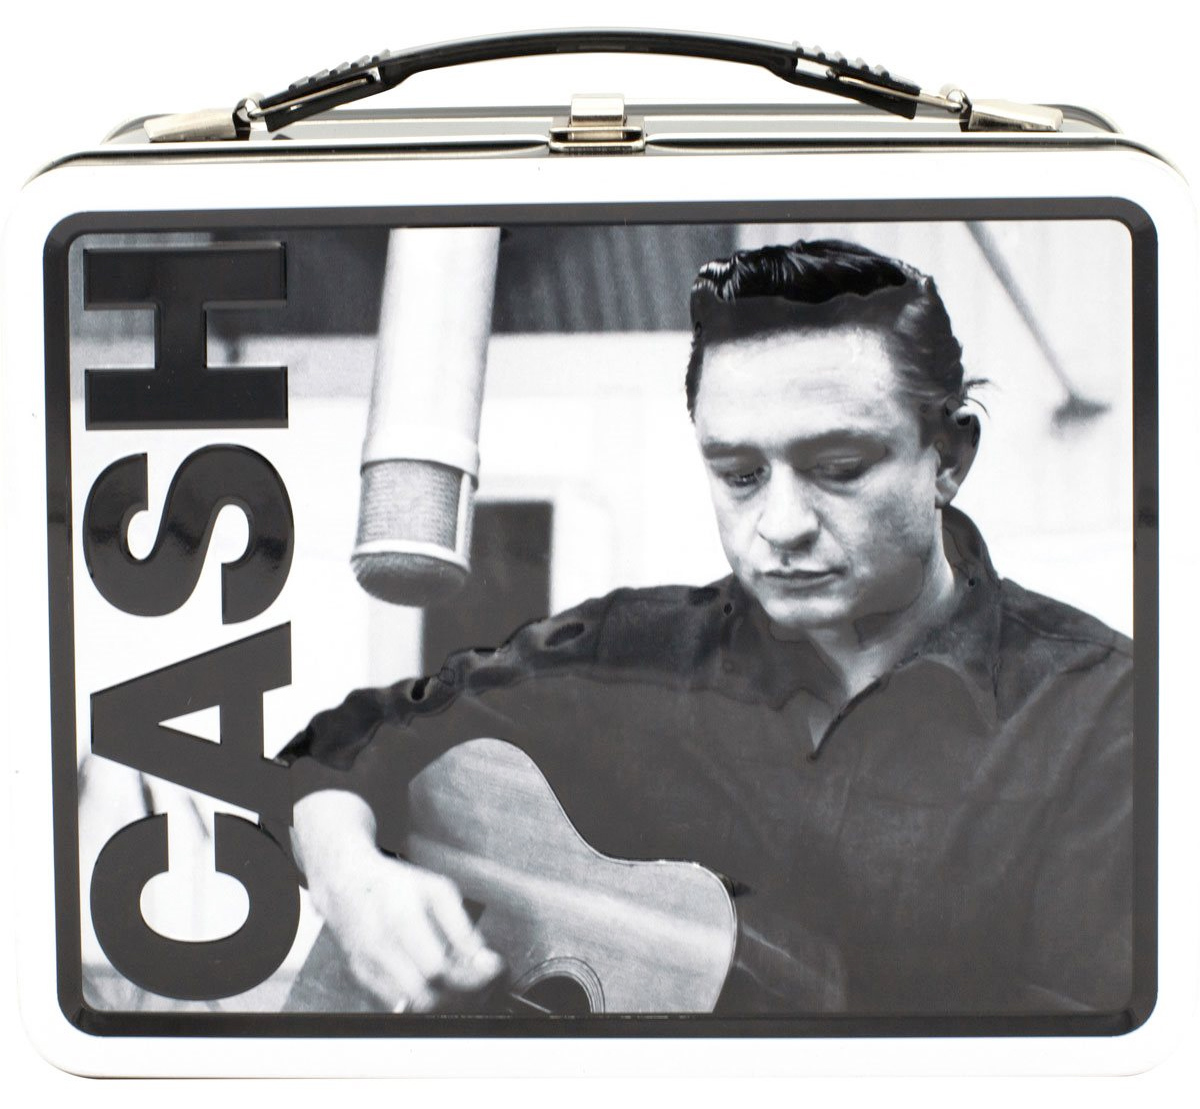 Lancheira Johnny Cash, o Homem de Preto